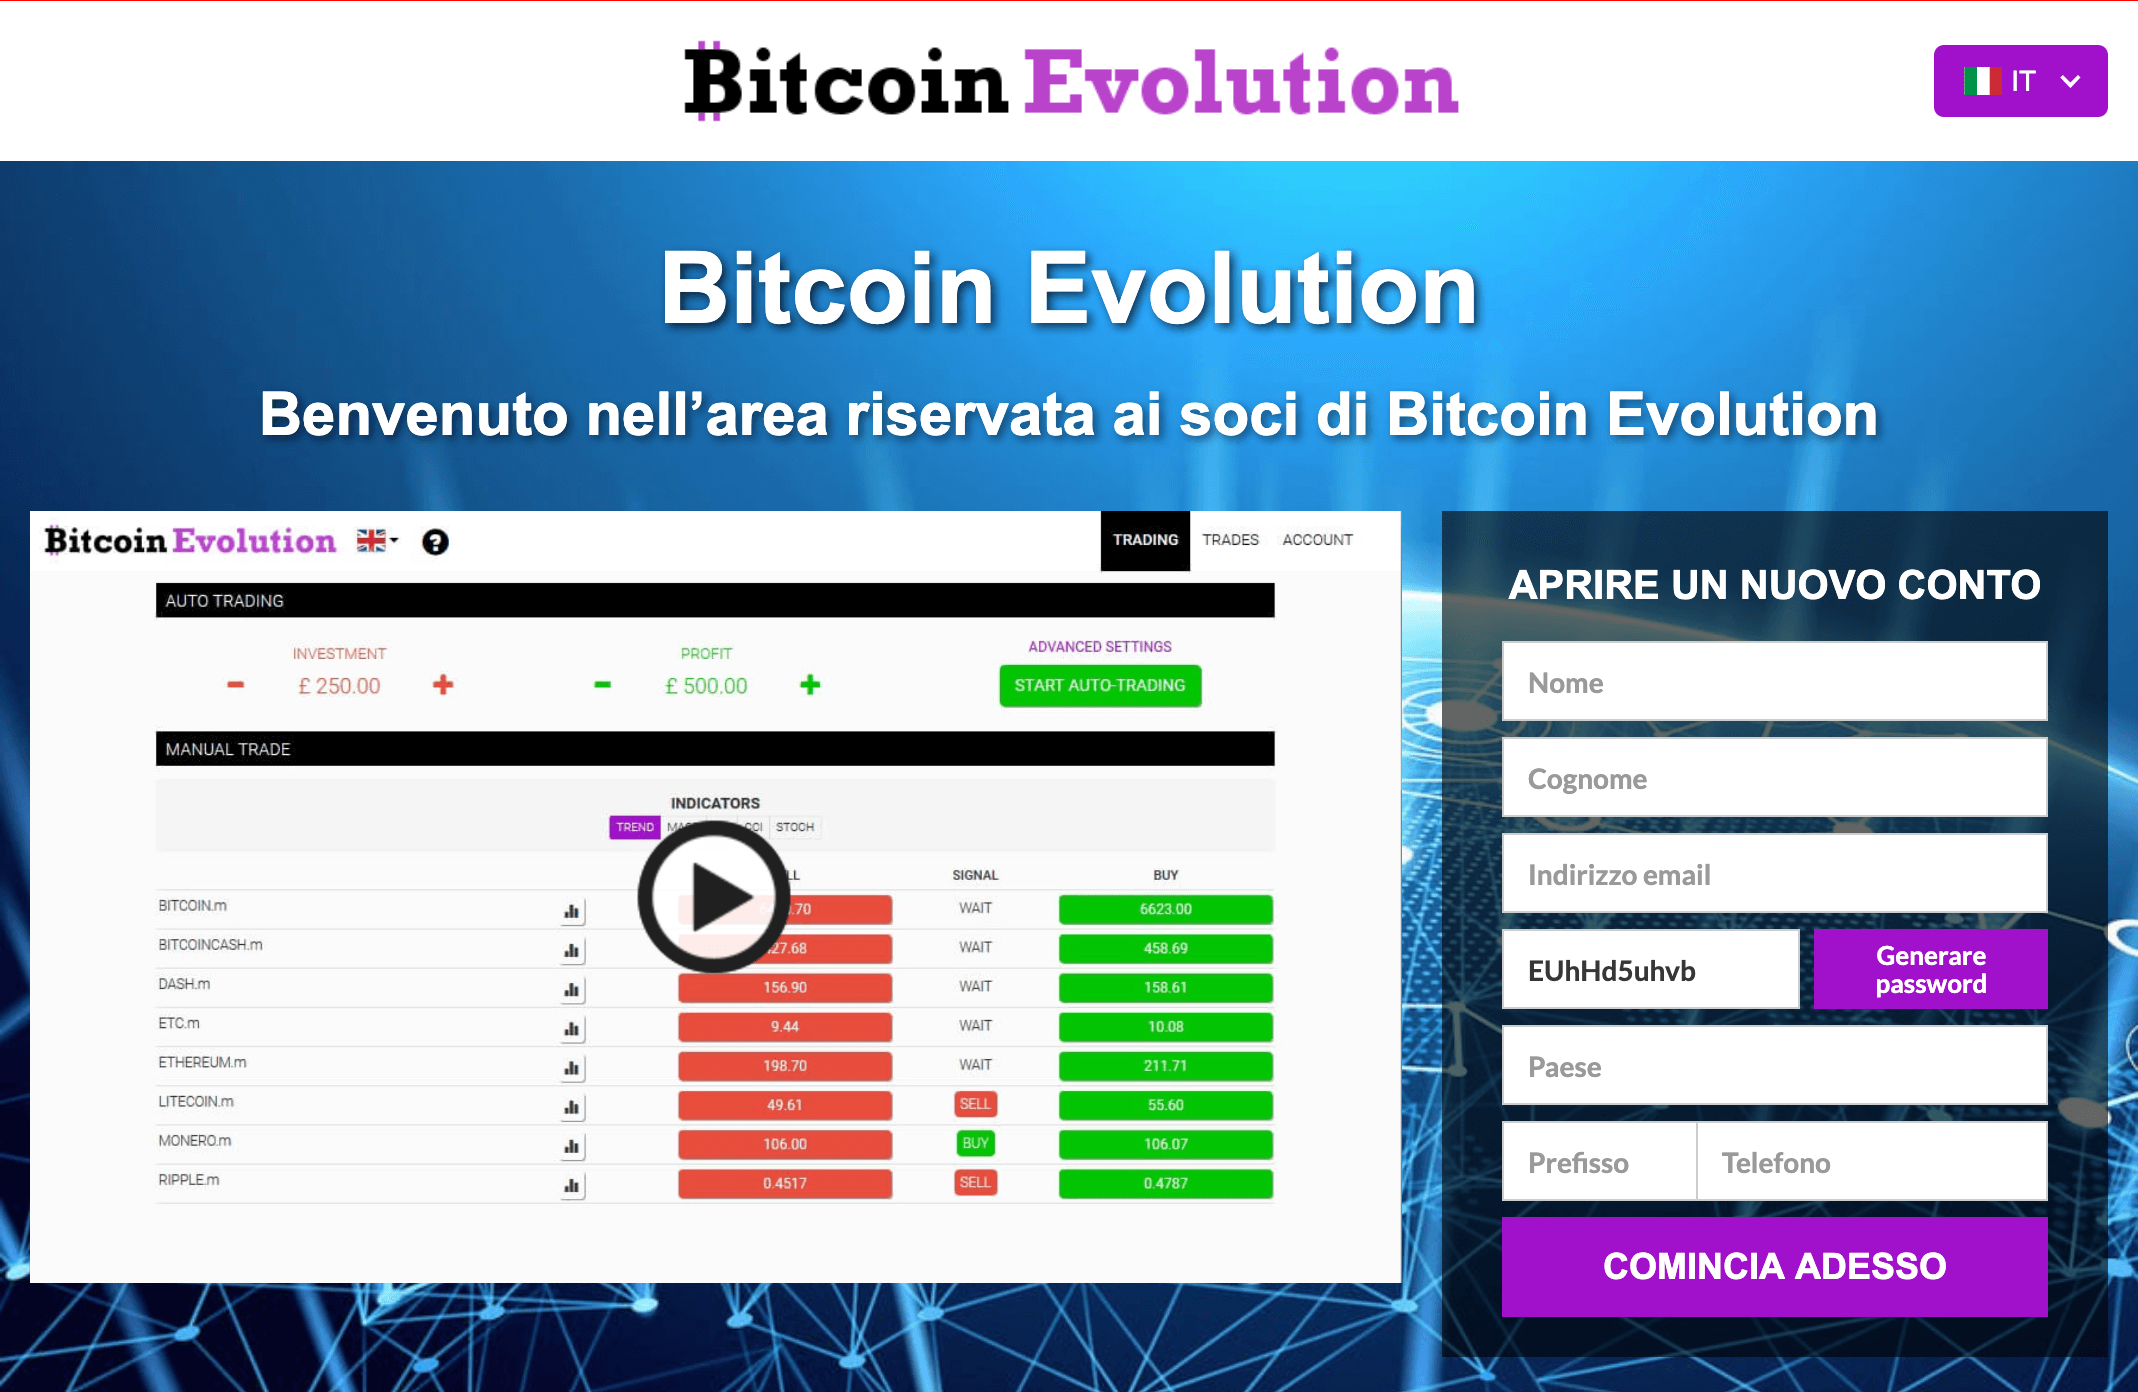 la più popolare piattaforma di trading bitcoin)